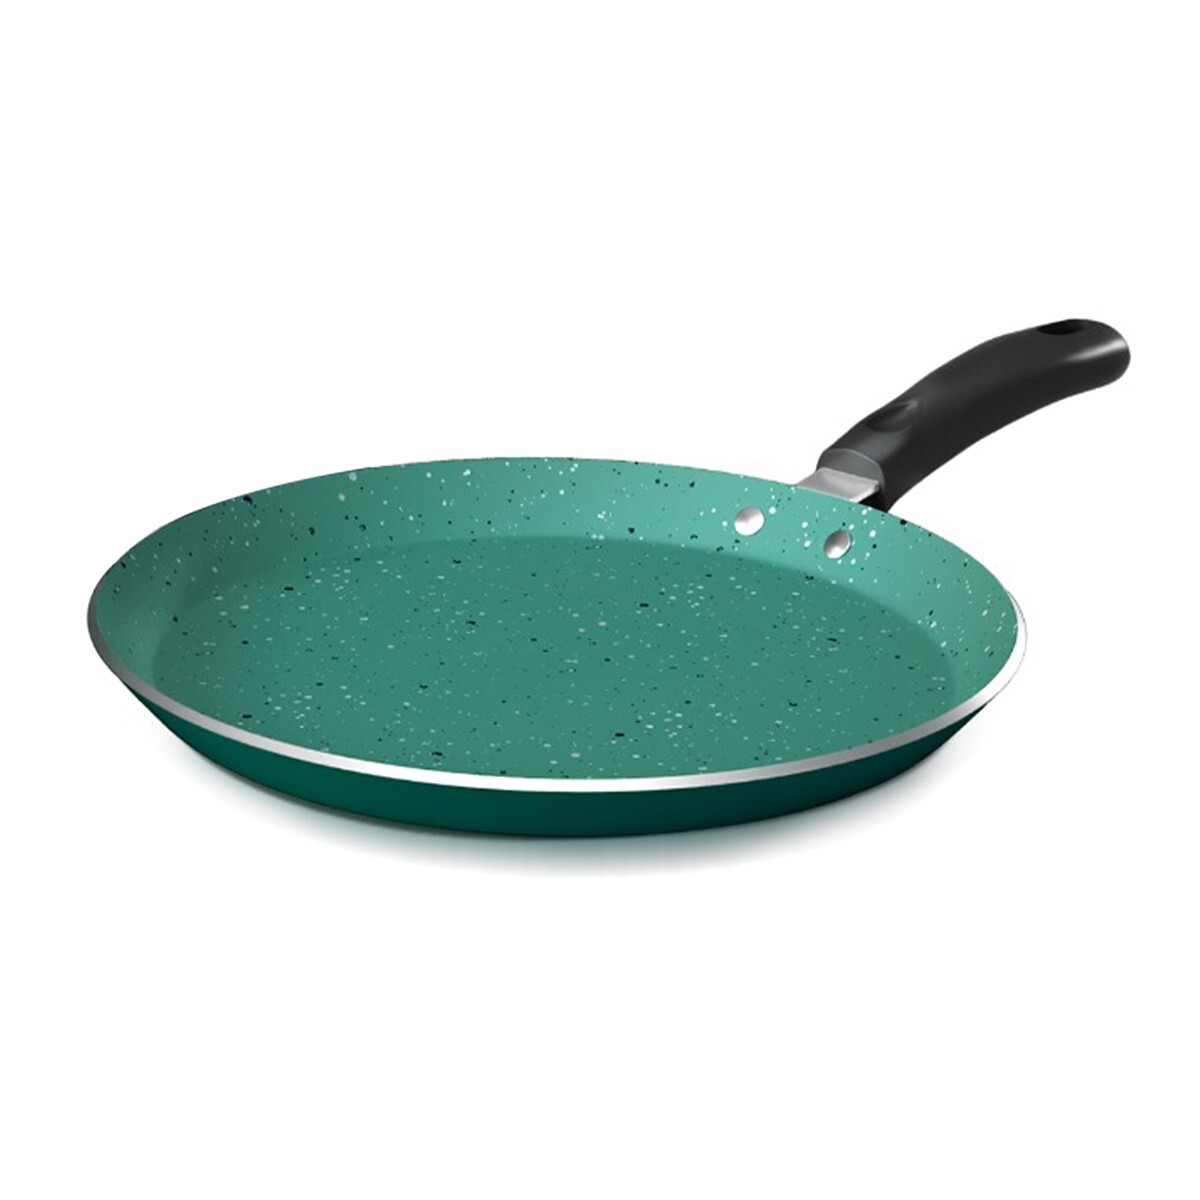 Impex Non Stick Granite Cookware 3pc set Green